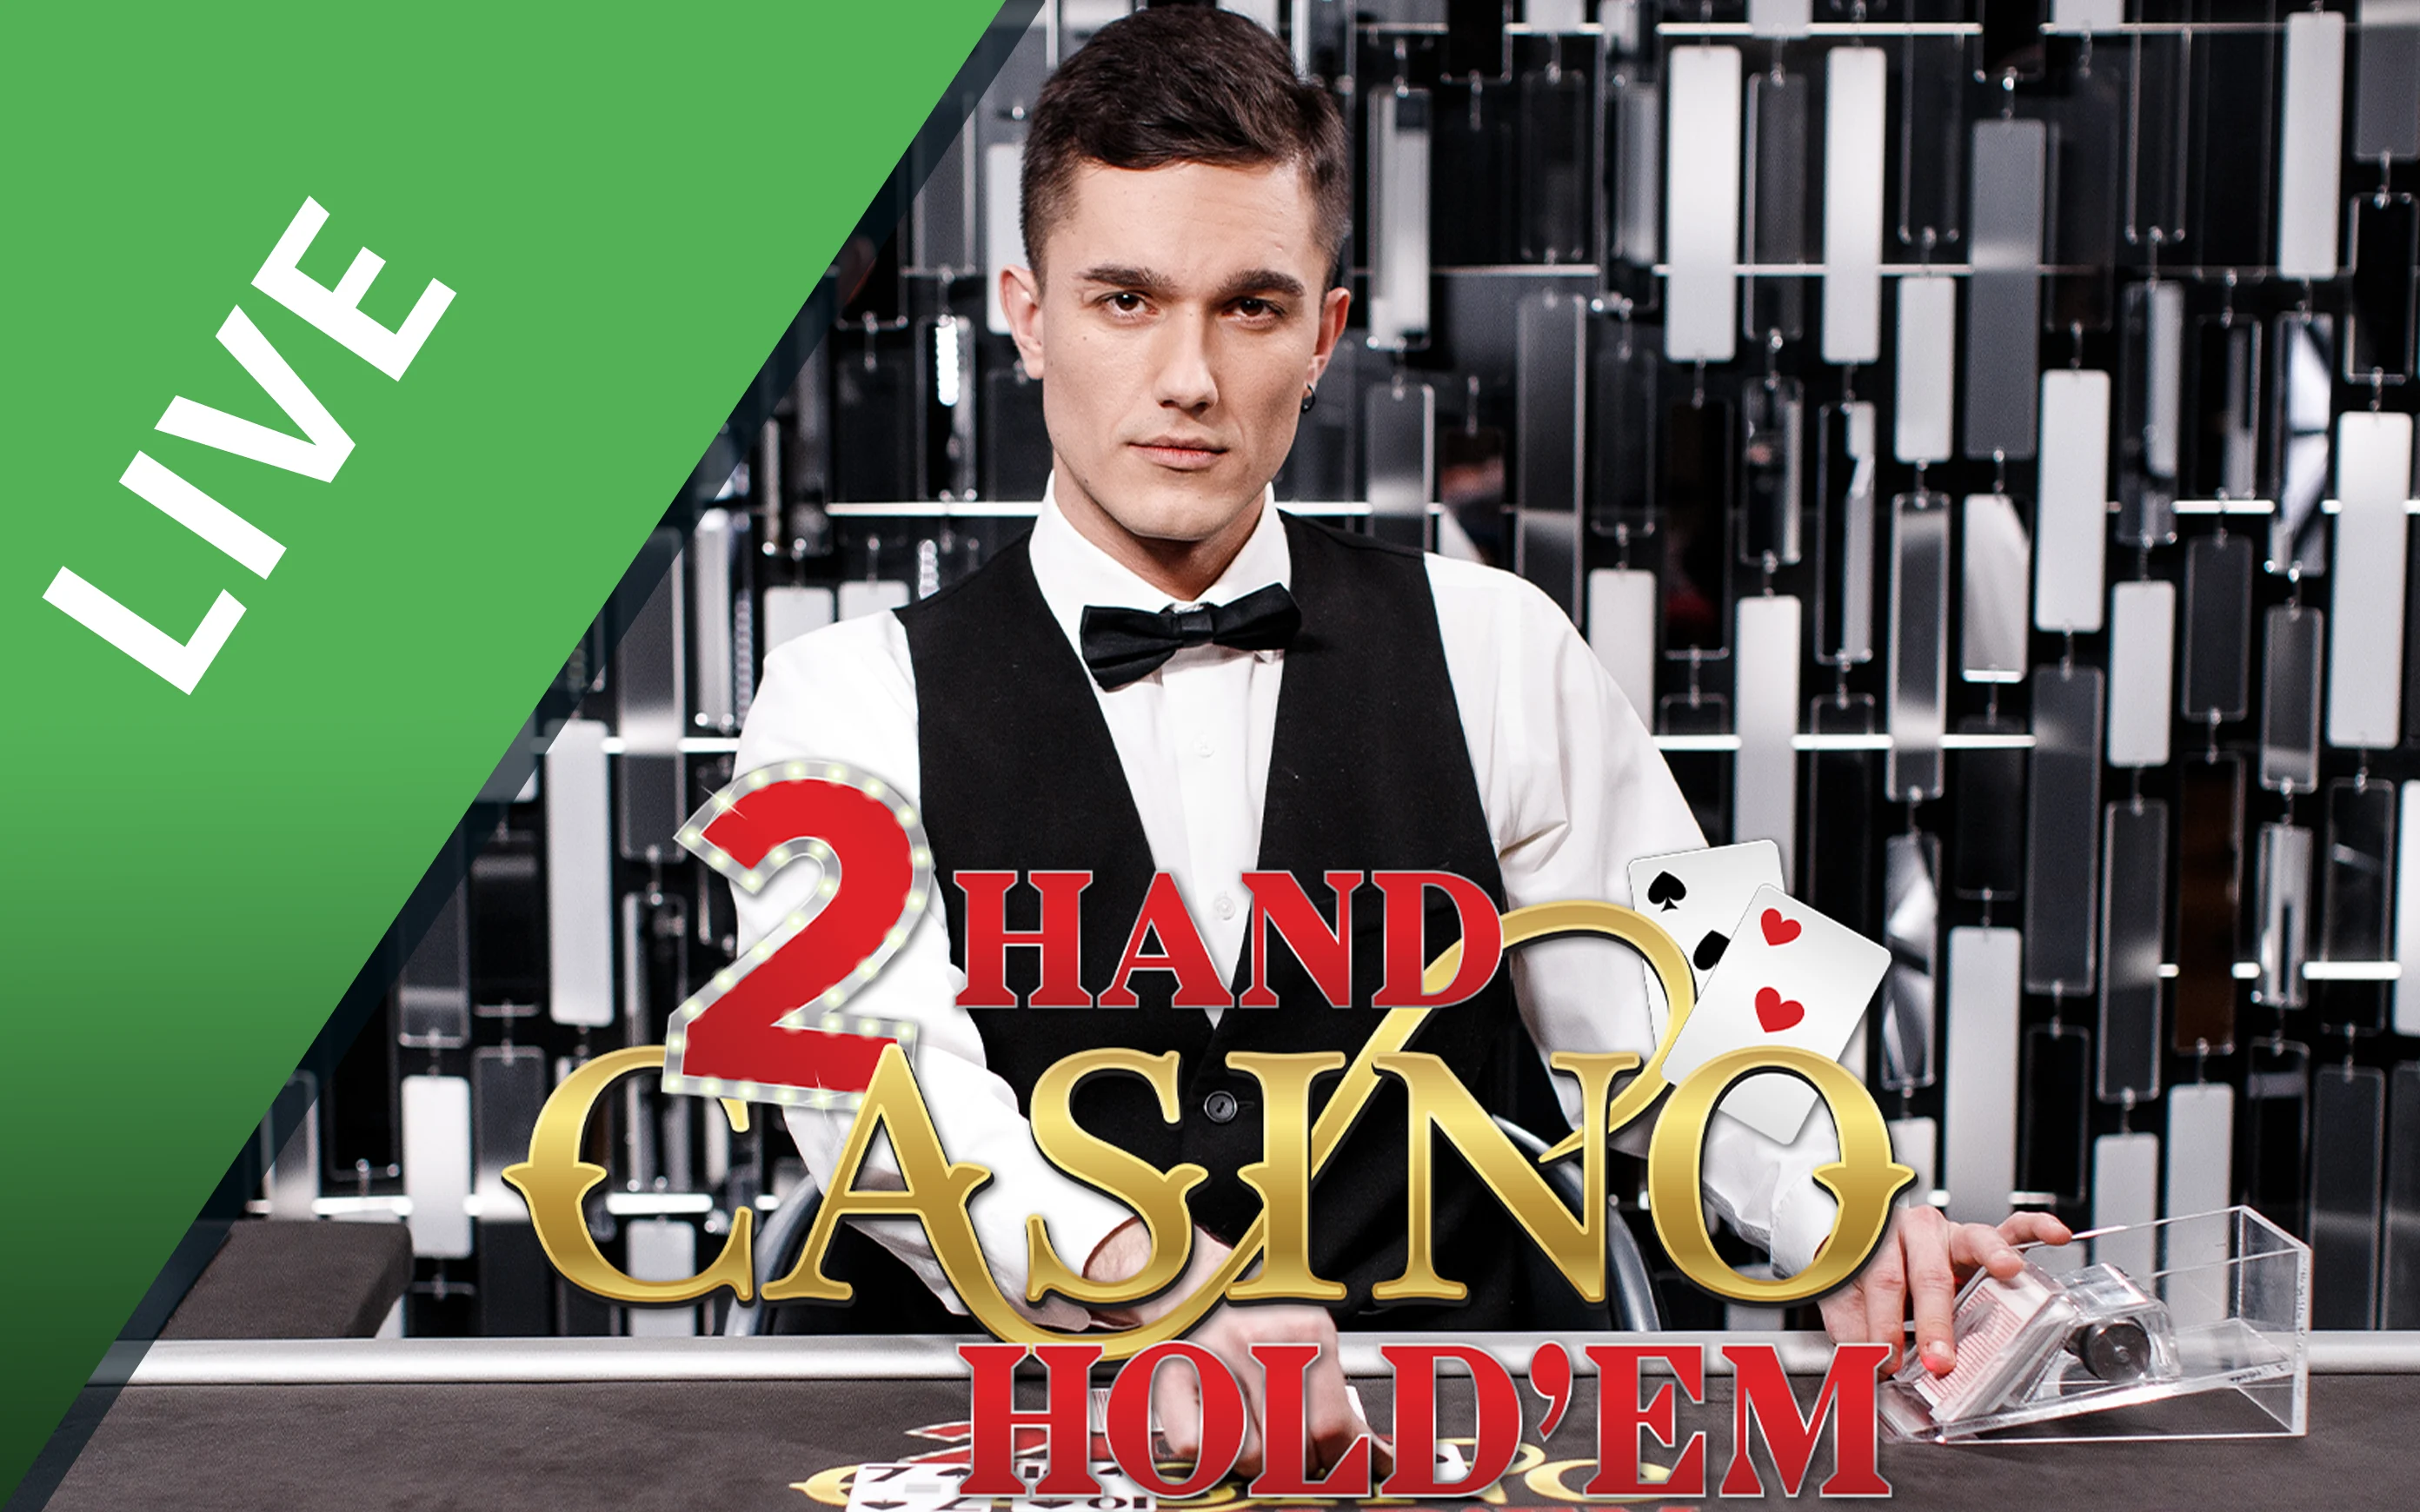 Starcasino.be online casino üzerinden Double Hand Casino Holdem oynayın